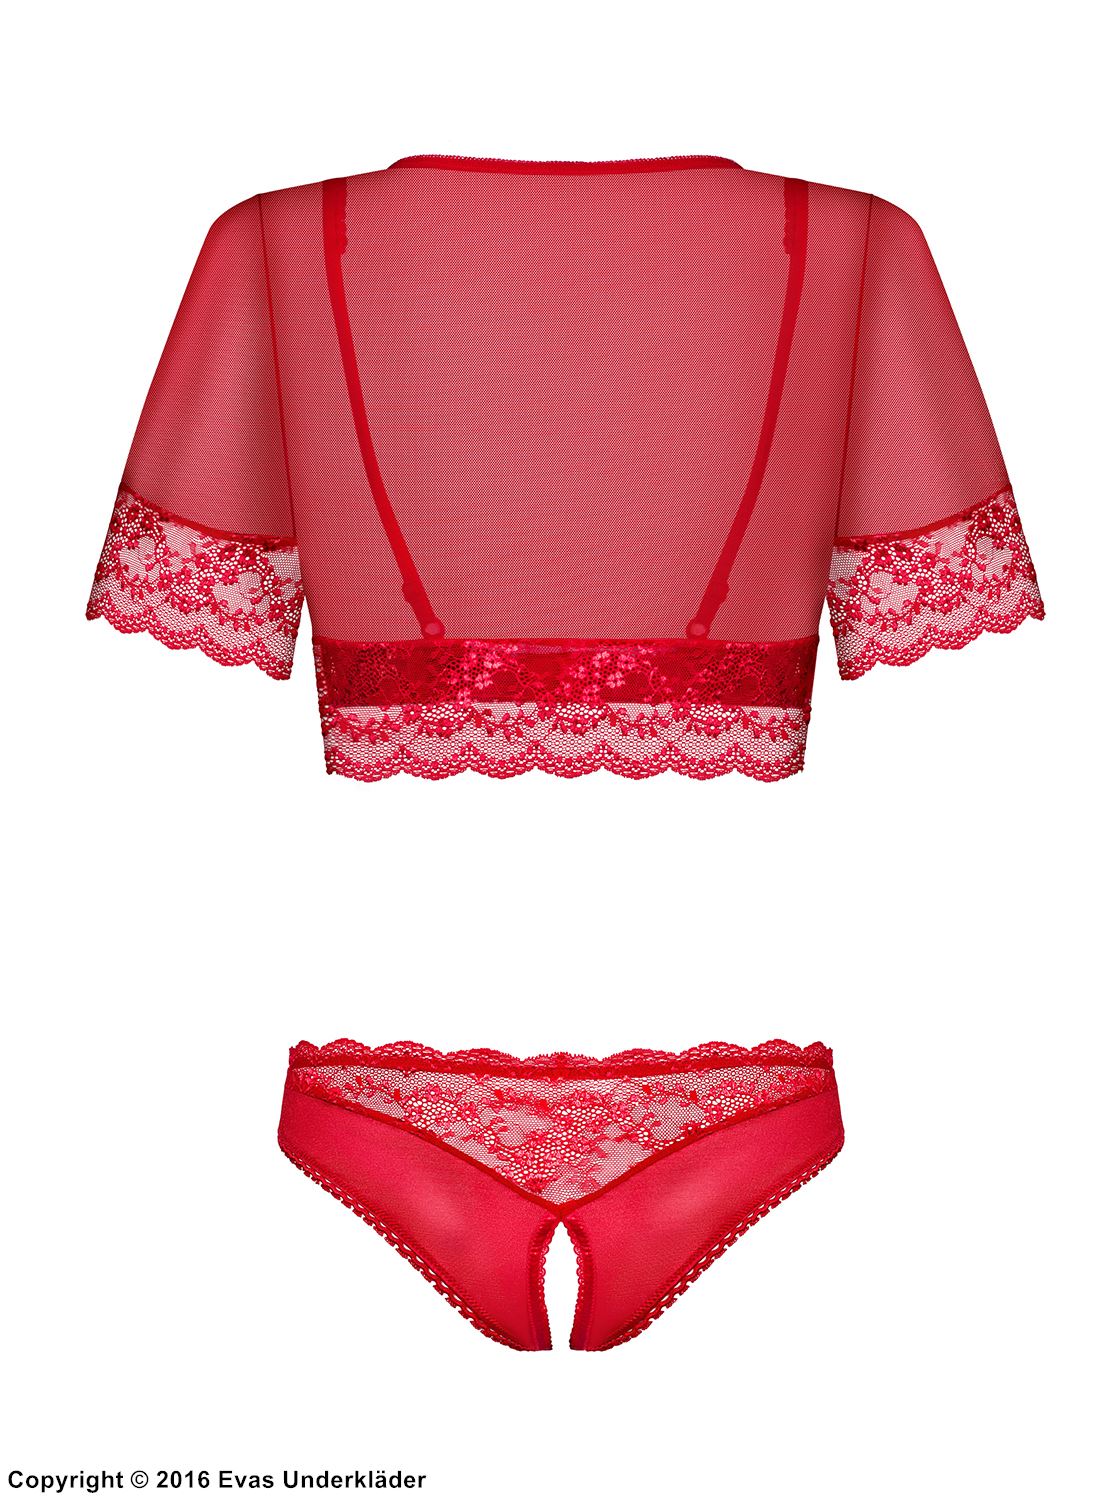 Sexy lingerie set, transparent lace, open cups, open crotch